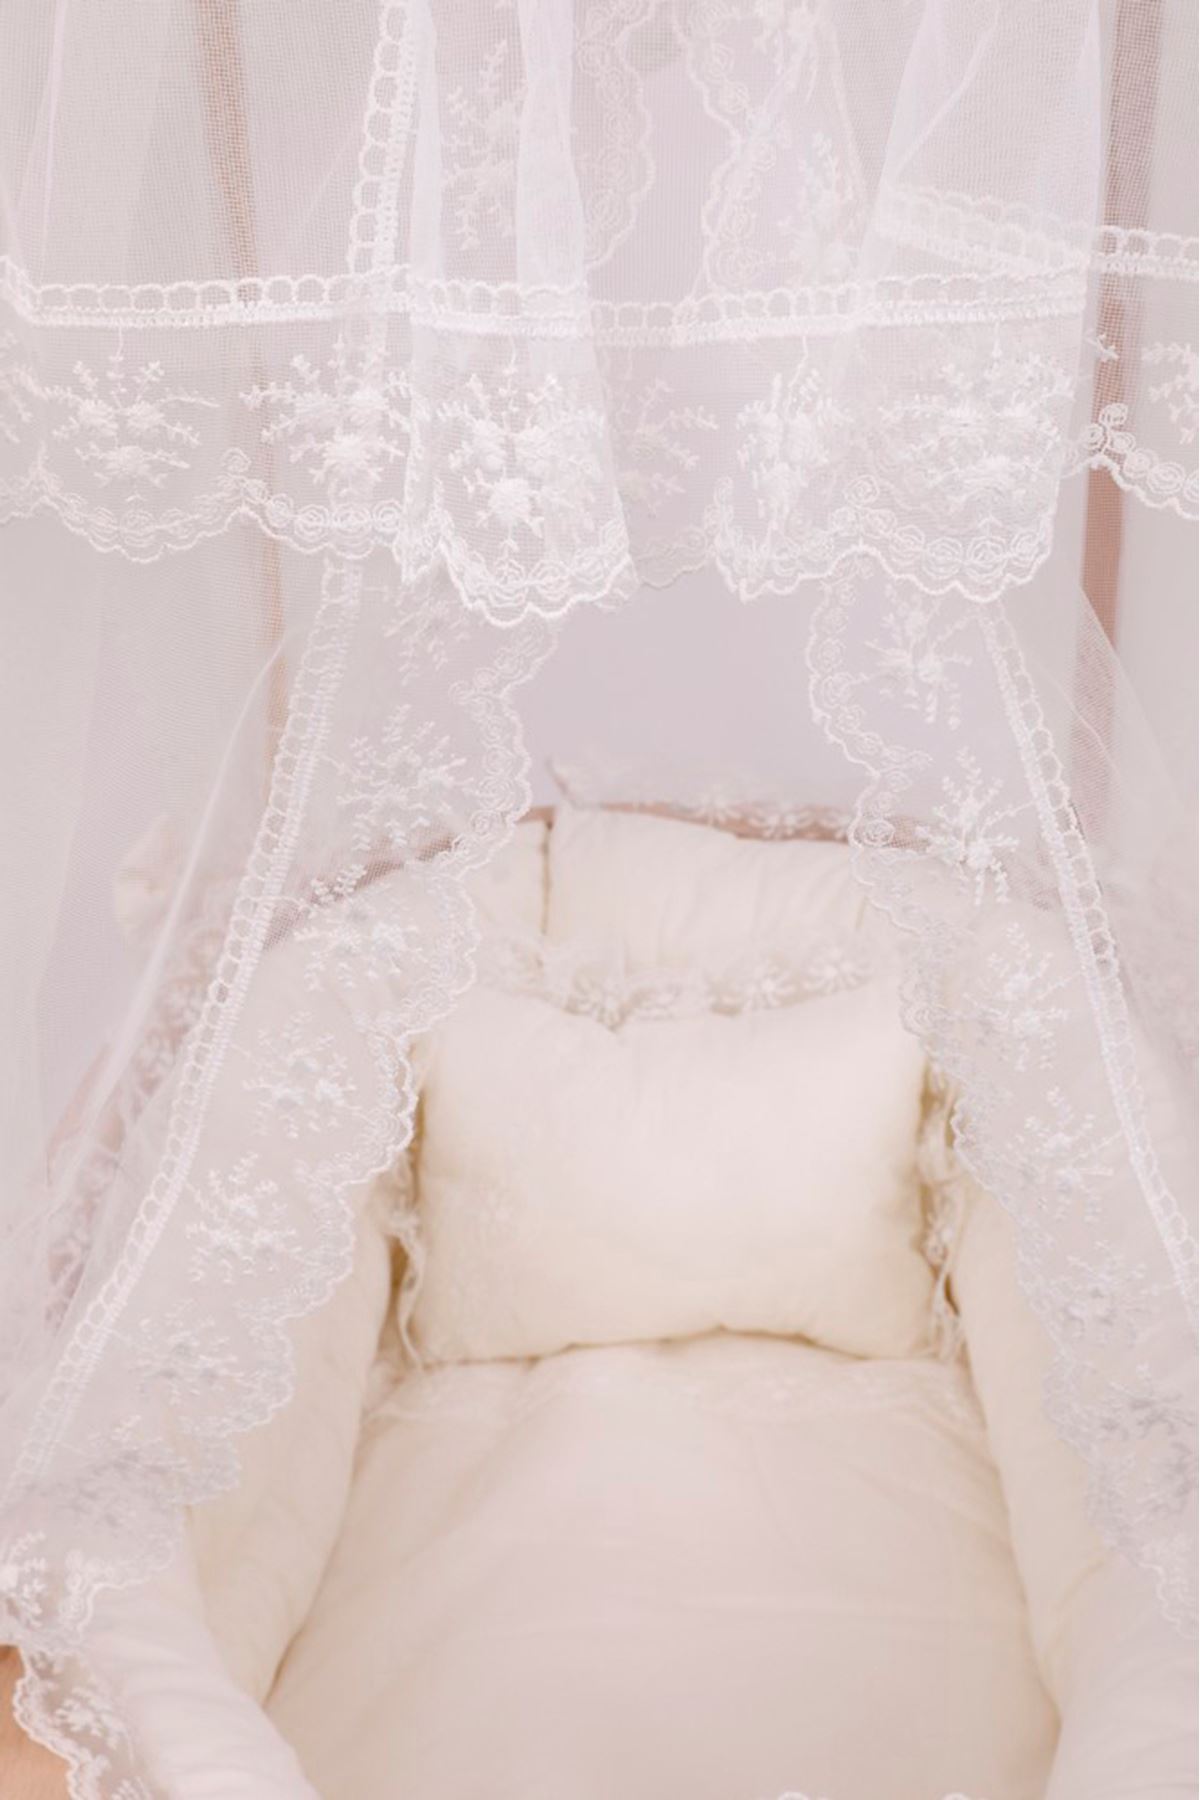 Çatılı Sepet Beşik - Ahşap  "Krem Fransız Dantel Uyku Set" İle